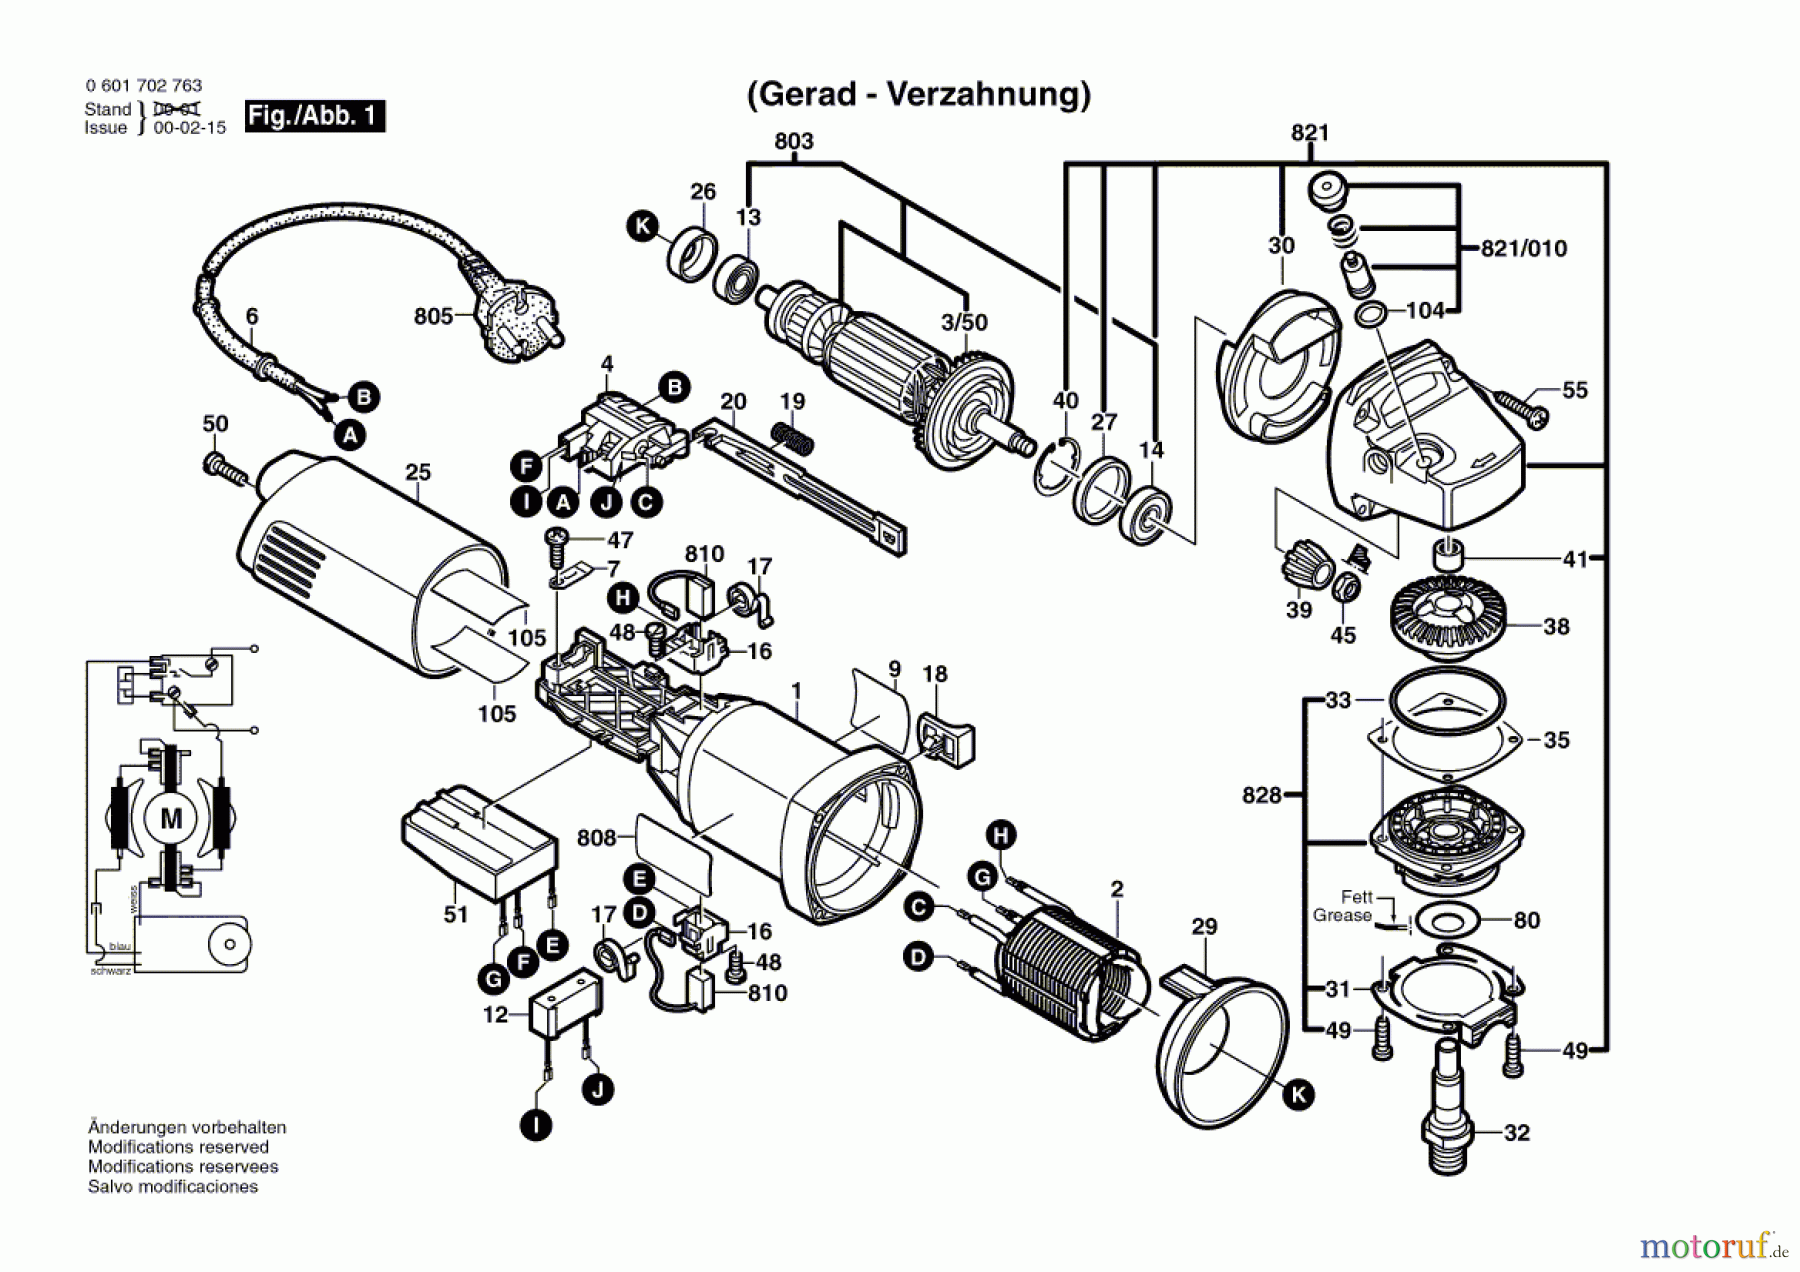  Bosch Werkzeug Winkelschleifer WKS 10-125 C Seite 1